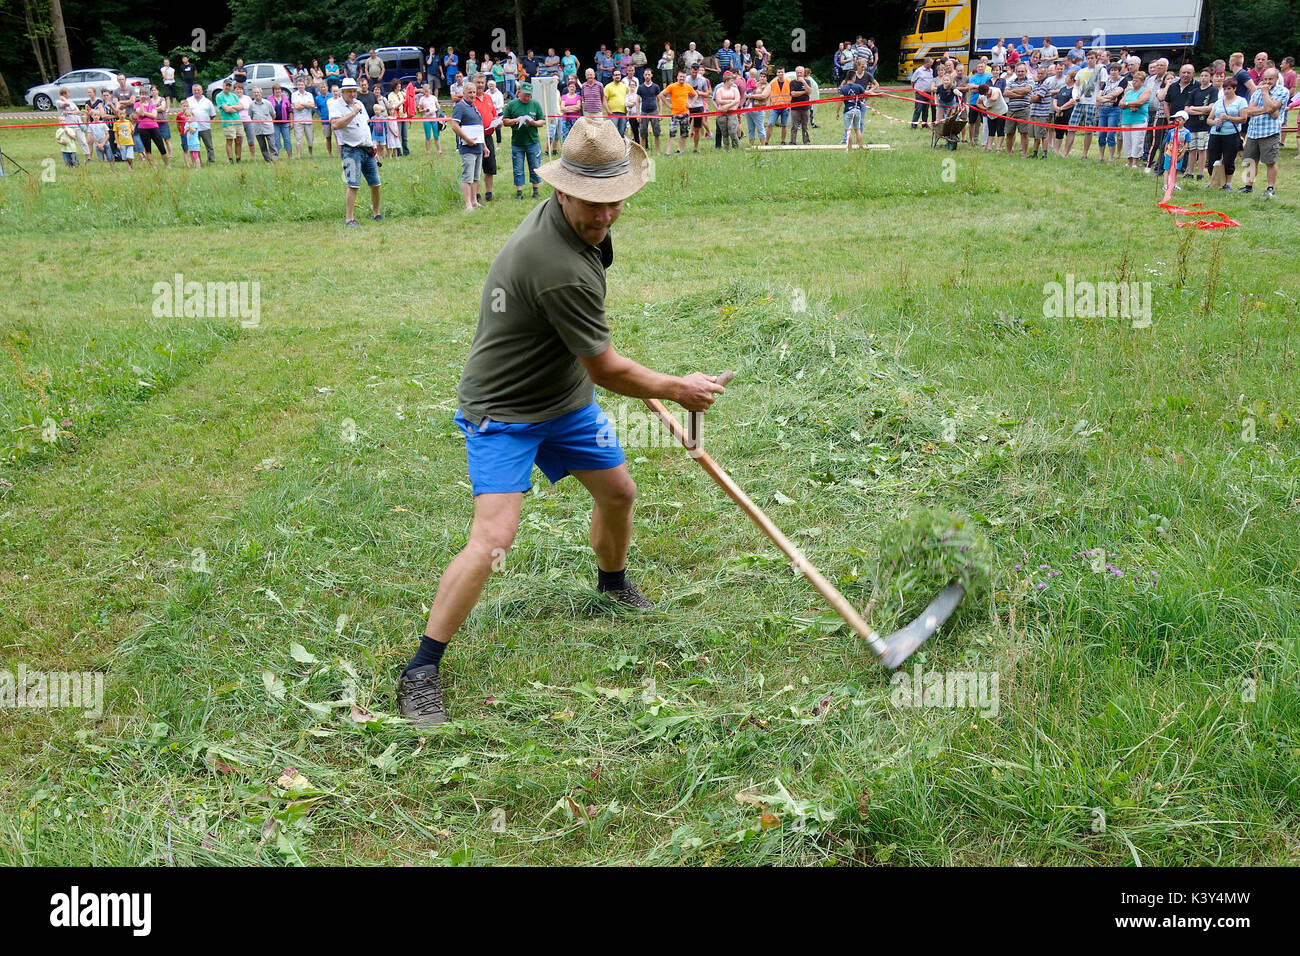 Ein Männer zeigt die Fähigkeit des Scythe Gras bewegt. Farmer's Spiele am Dorf Messe in Tržišče. Dolenjska, Slowenien Stockfoto